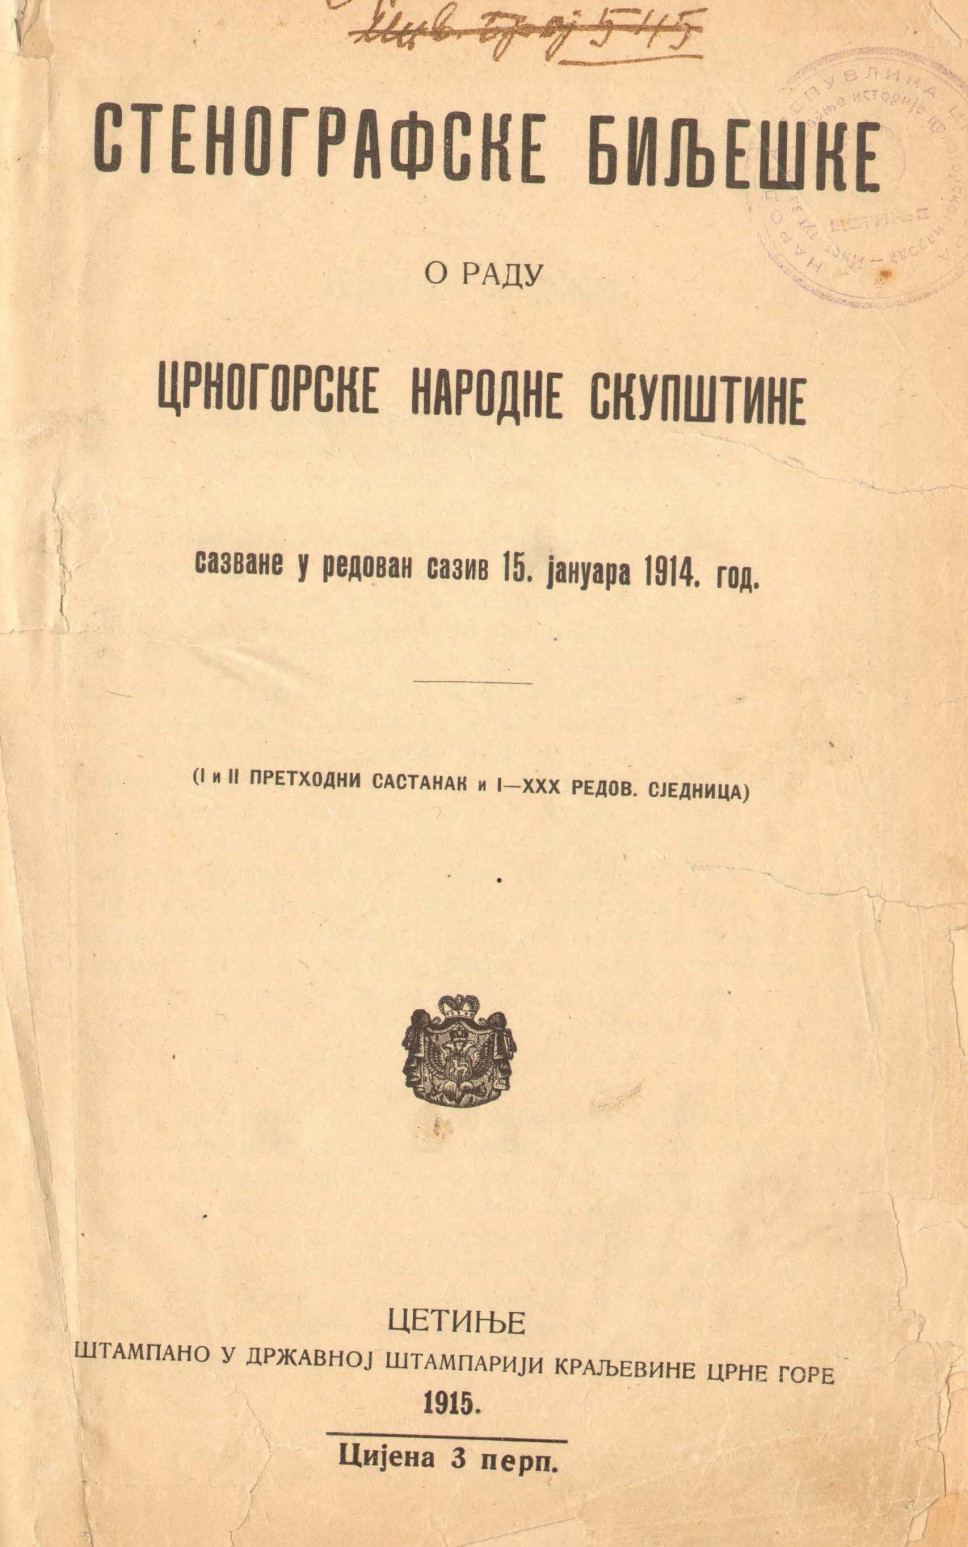 Stenografske bilješke crnogorske narodne skupštine, 1914